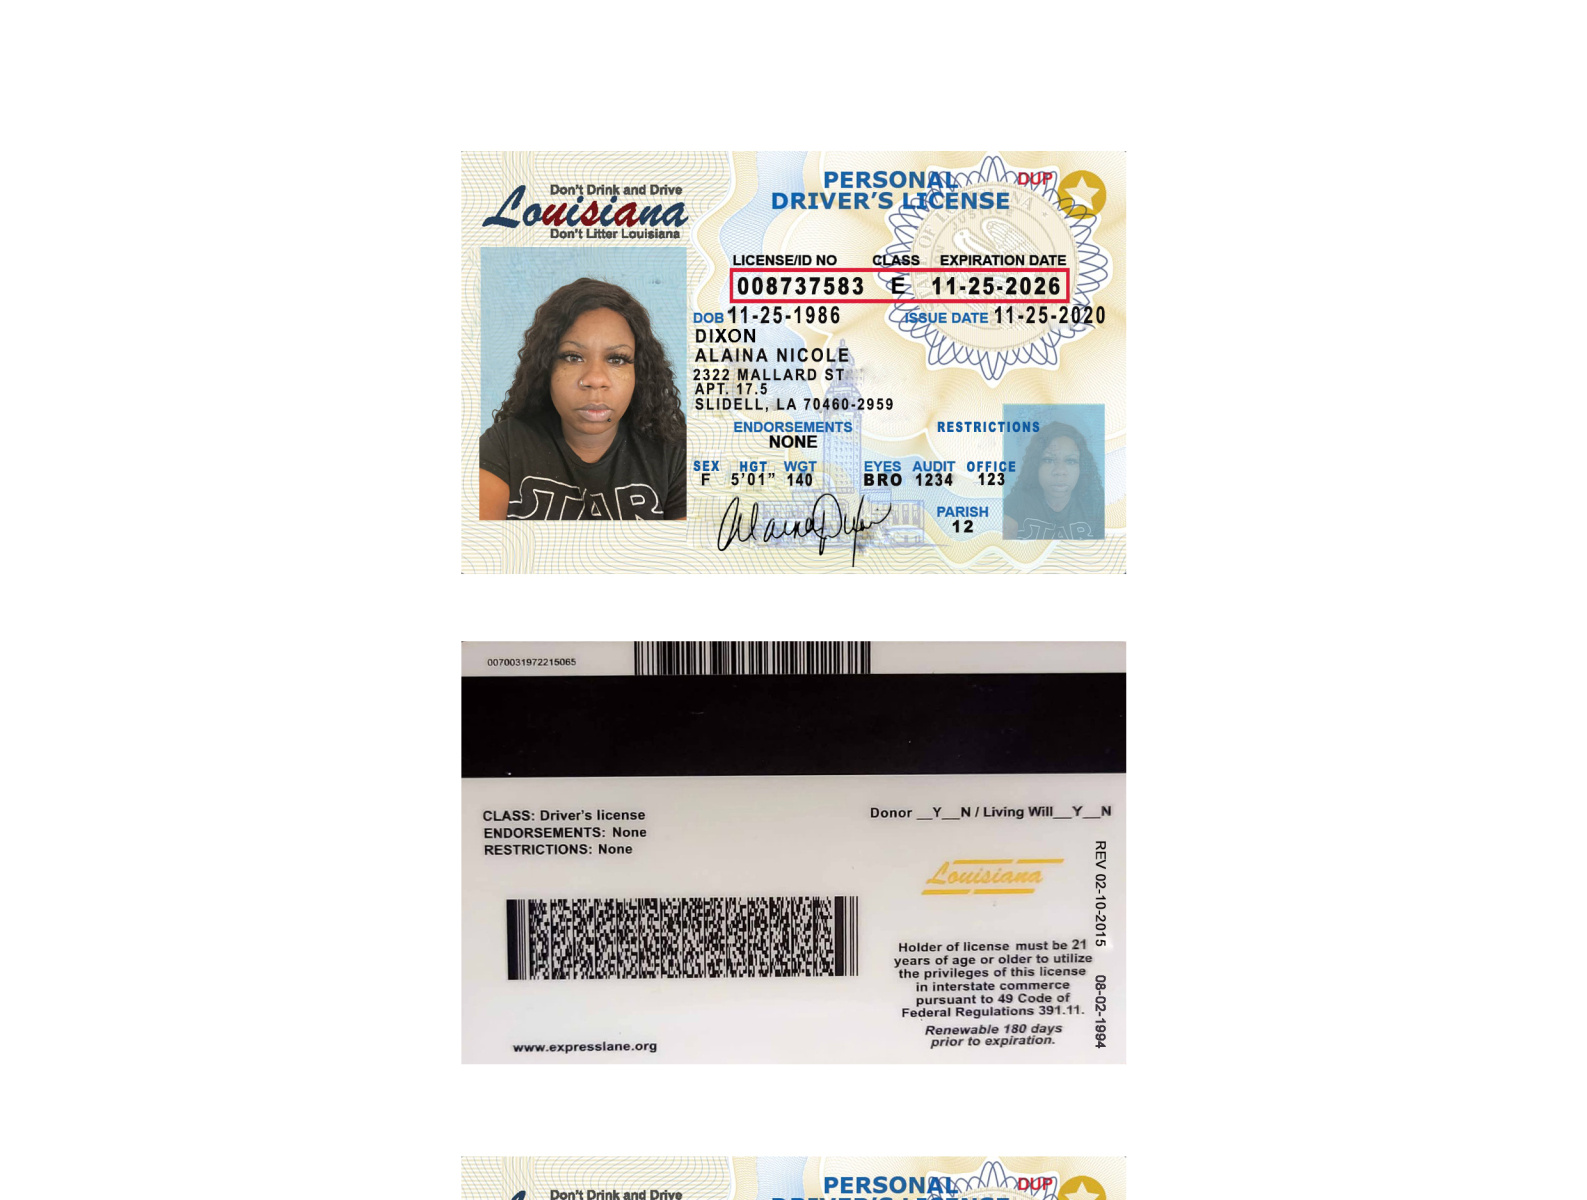 louisiana dmv driver's license